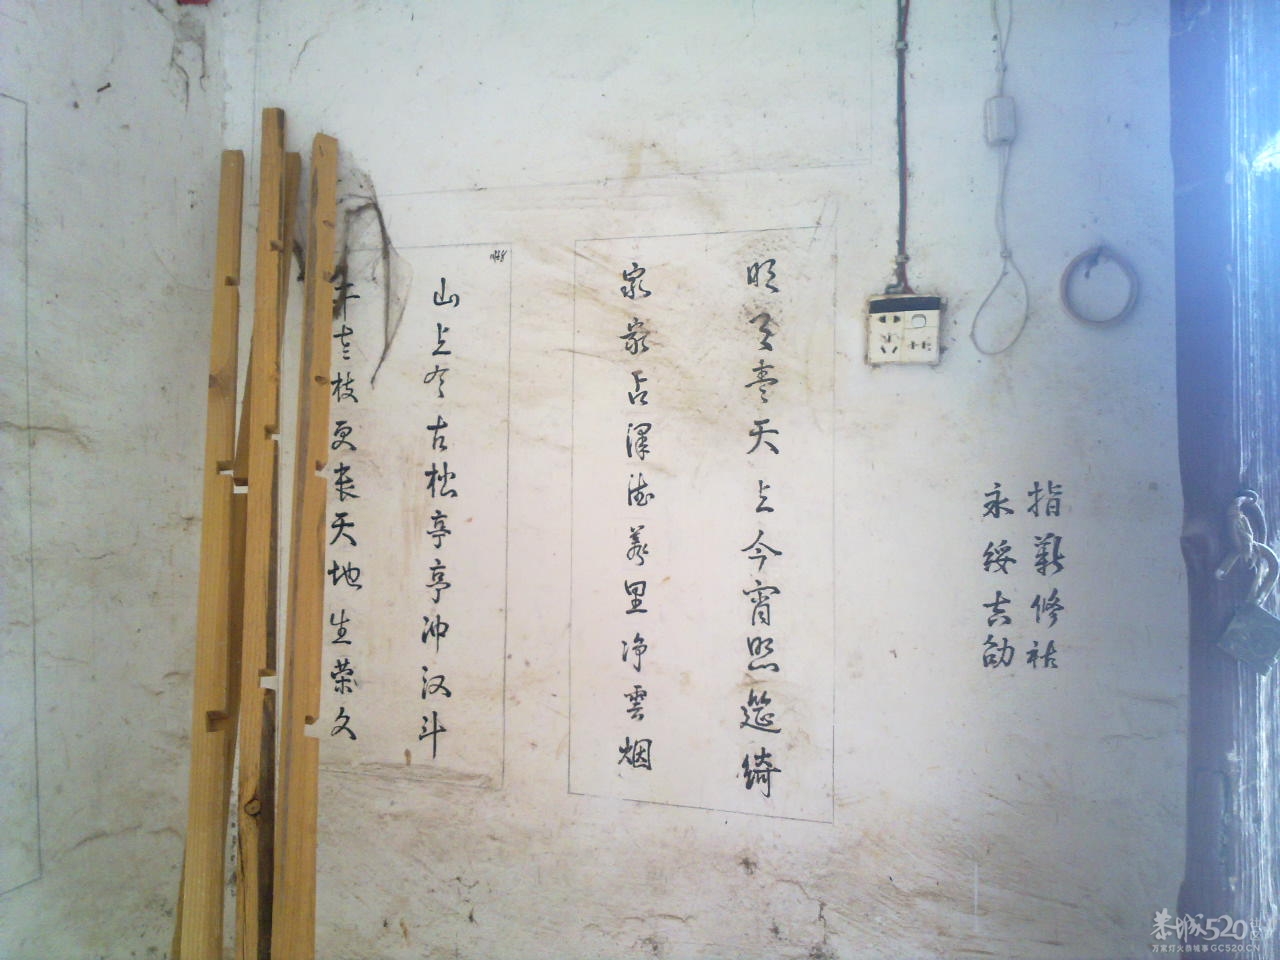 在邓扒村一间民房墙上拍到的诗词220 / 作者:金网 / 帖子ID:11390